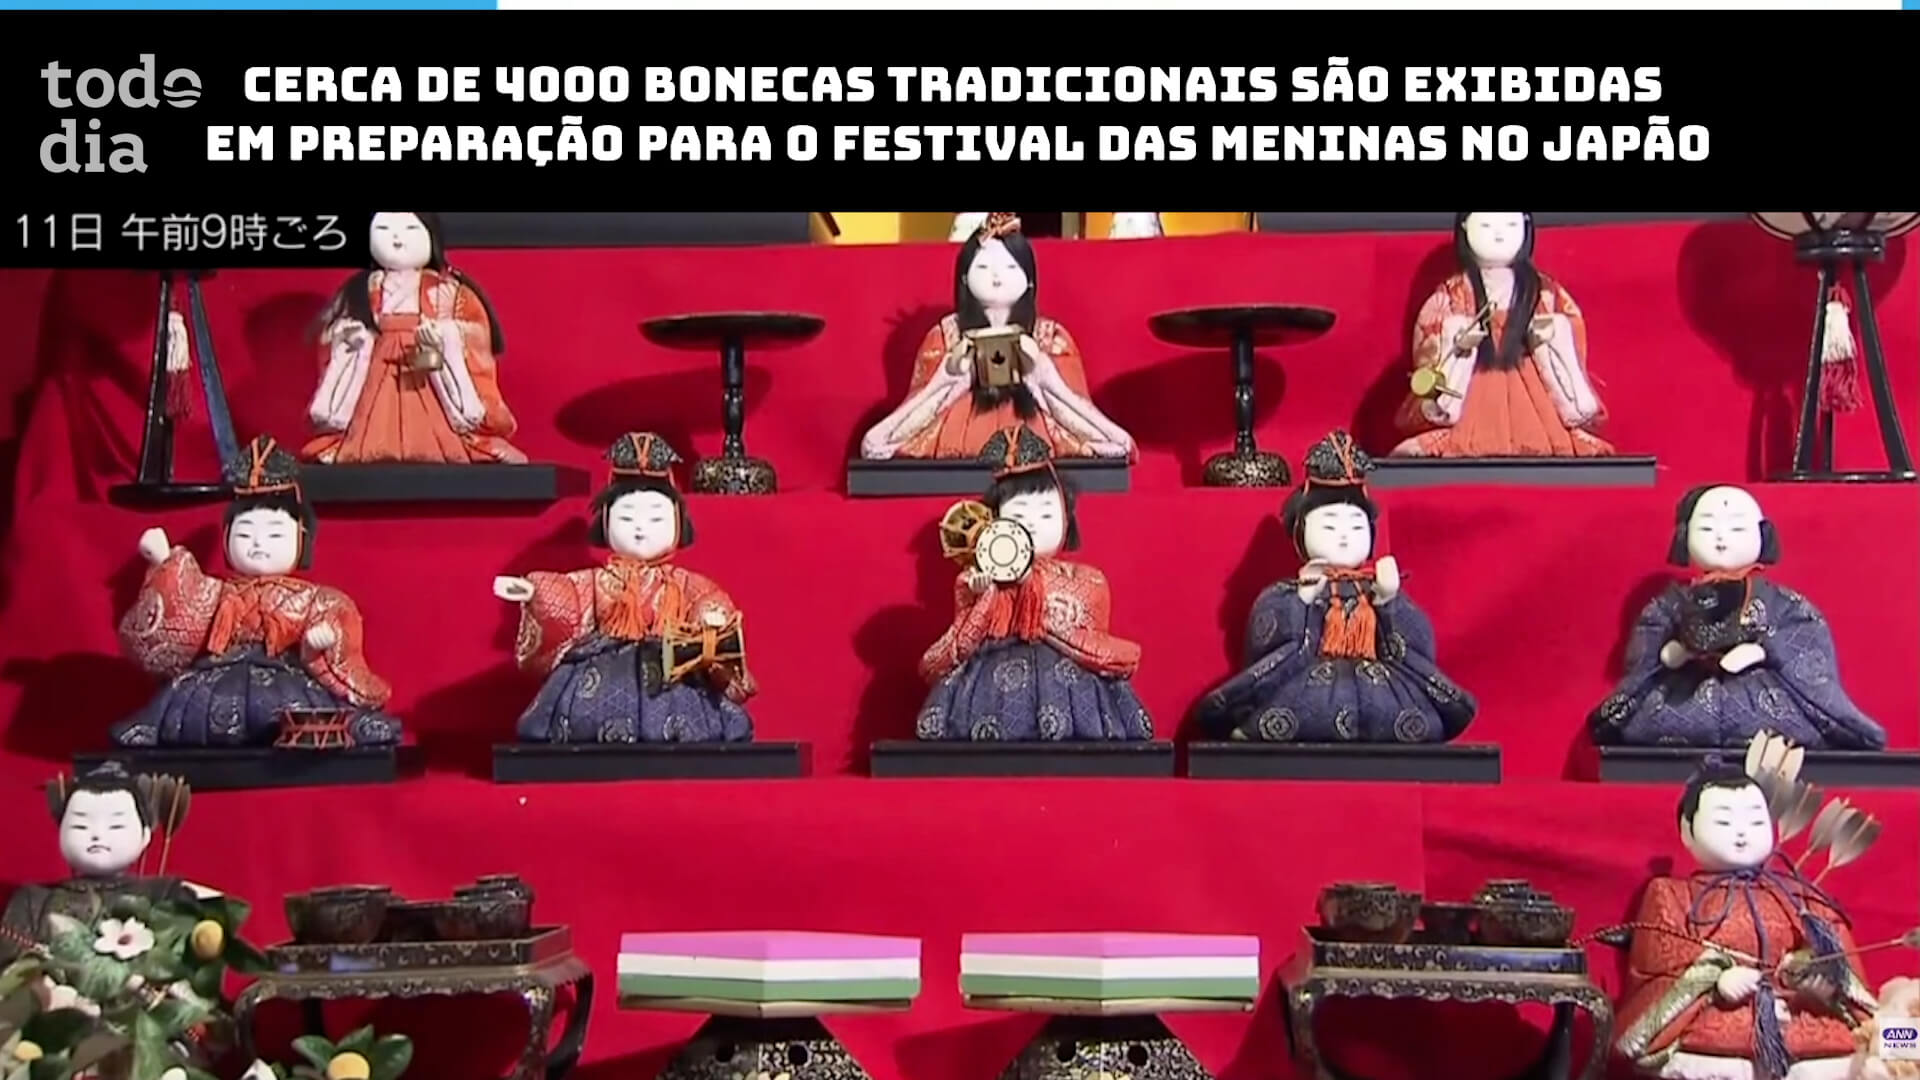 Cerca de 4000 bonecas tradicionais são exibidas em preparação para o festival das meninas no Japão